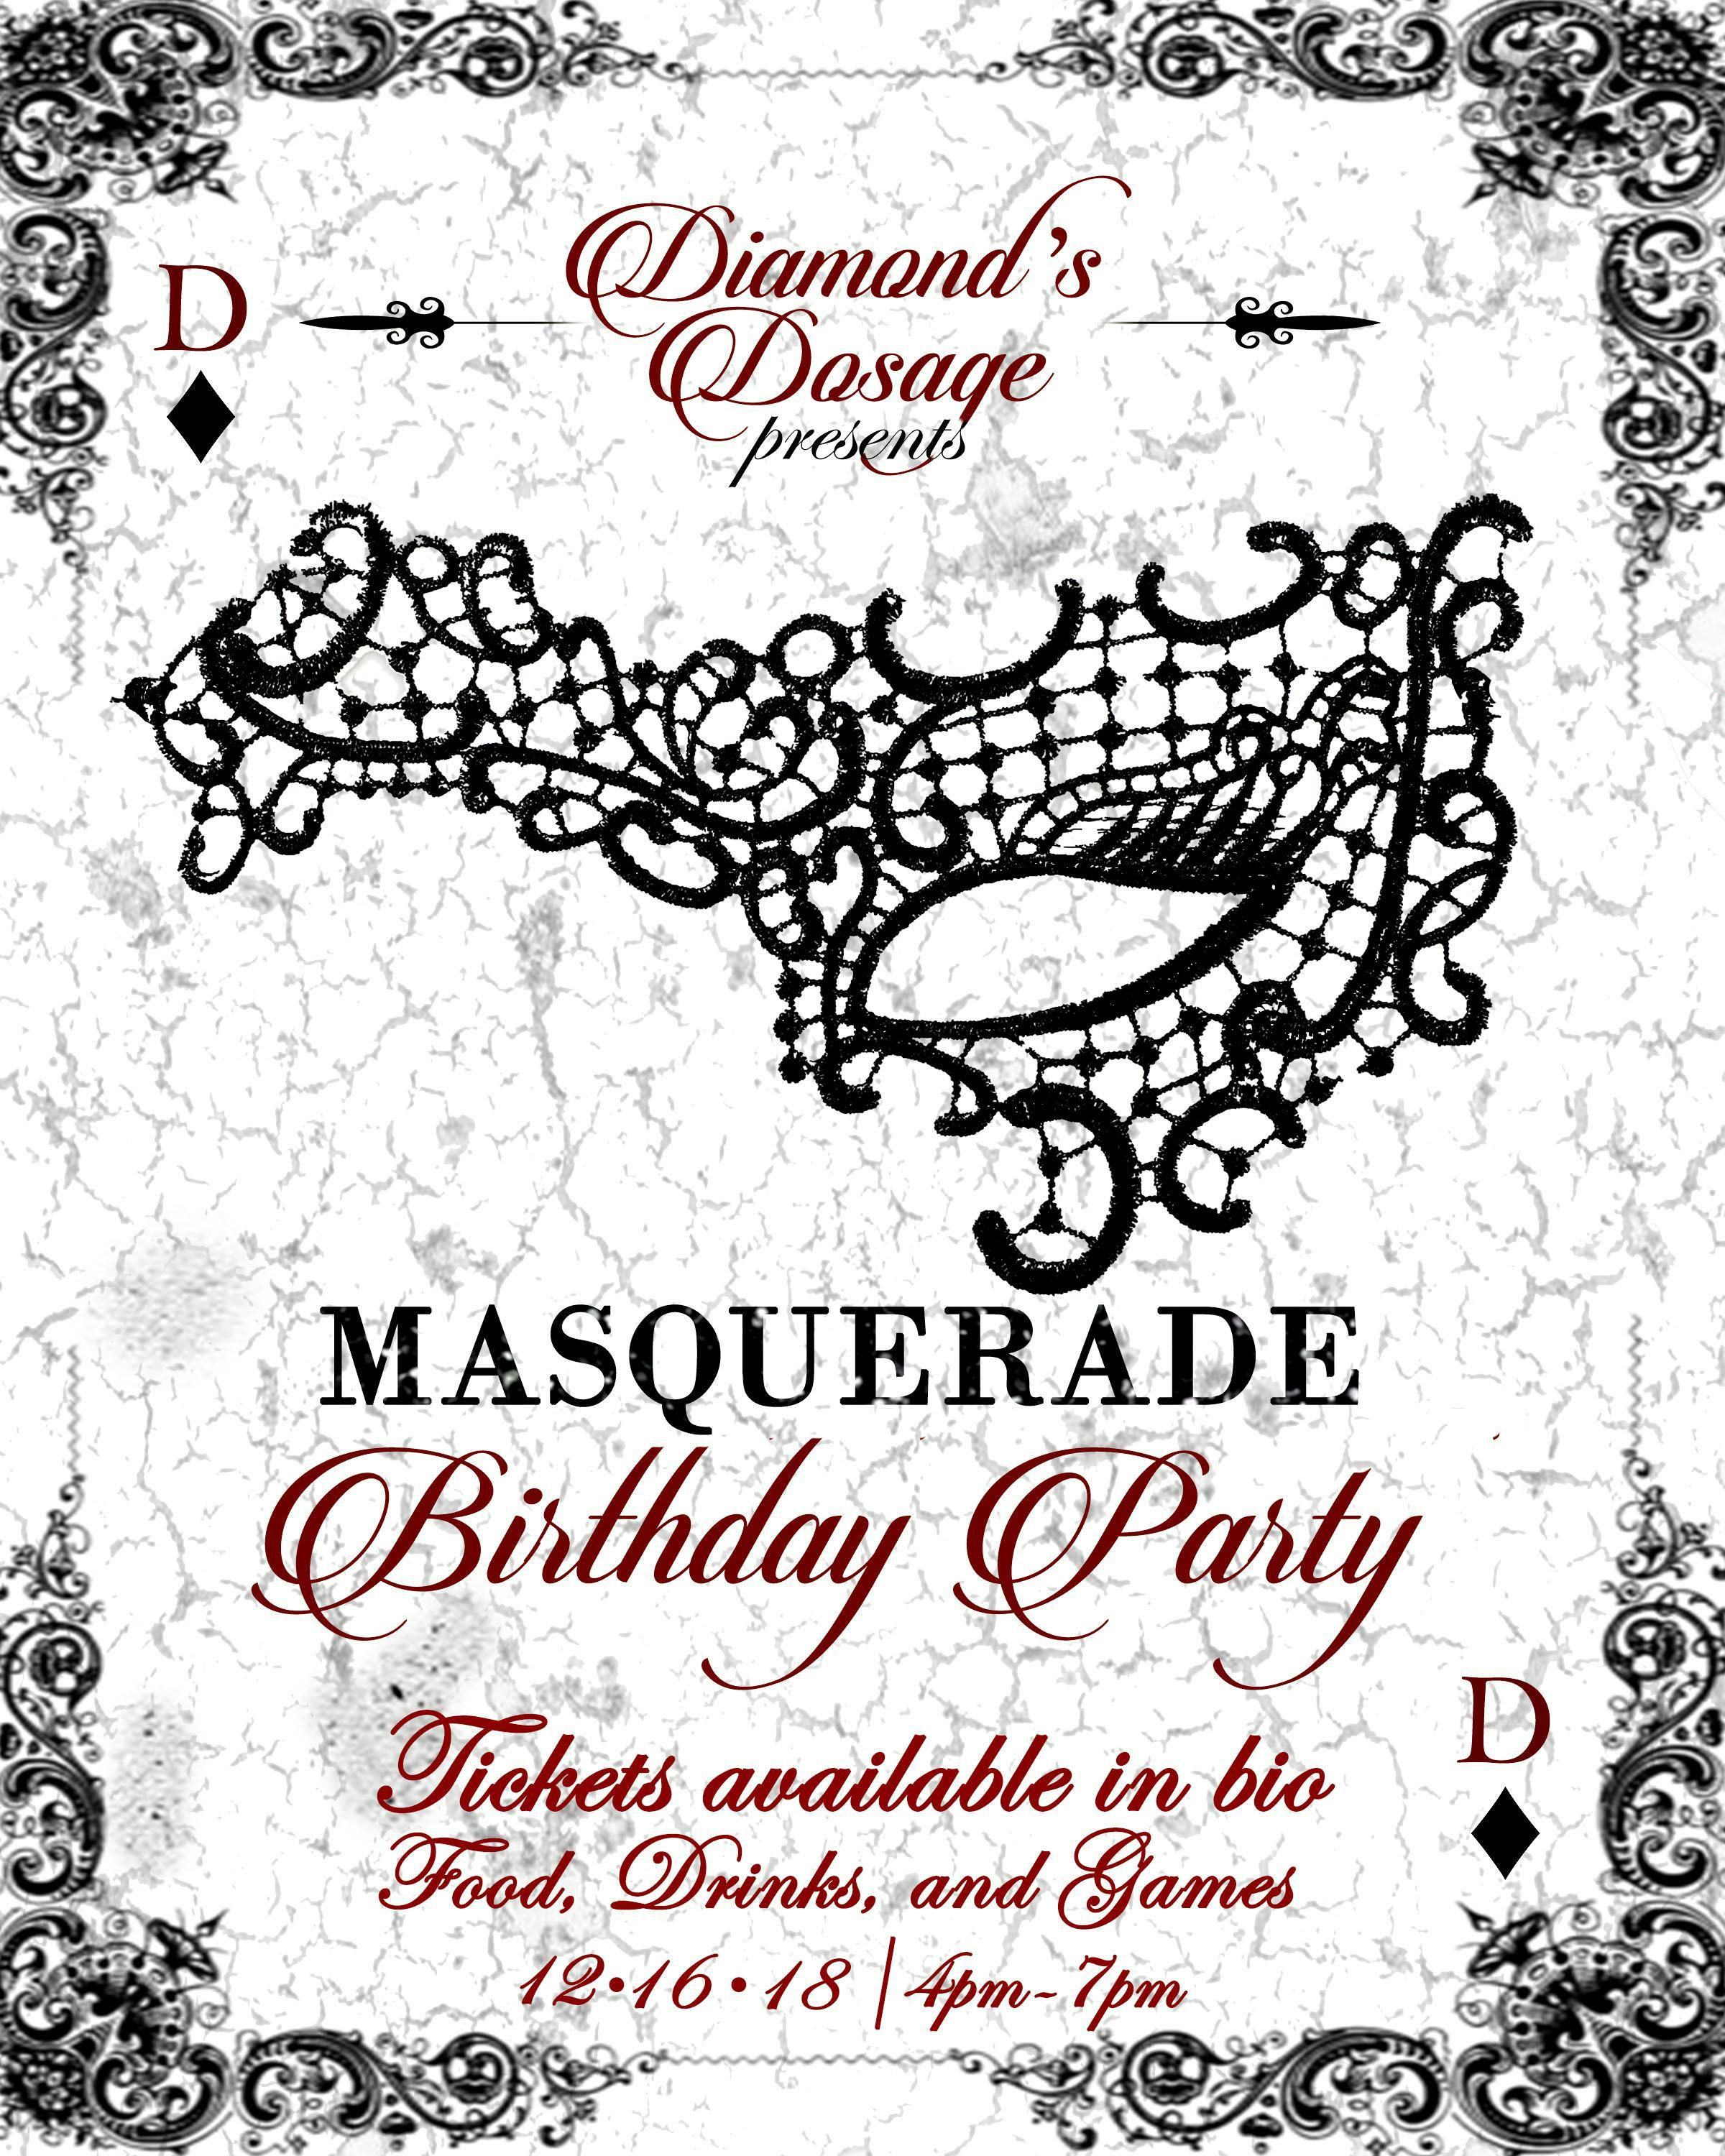 Diamond's Dosage Masquerade Party